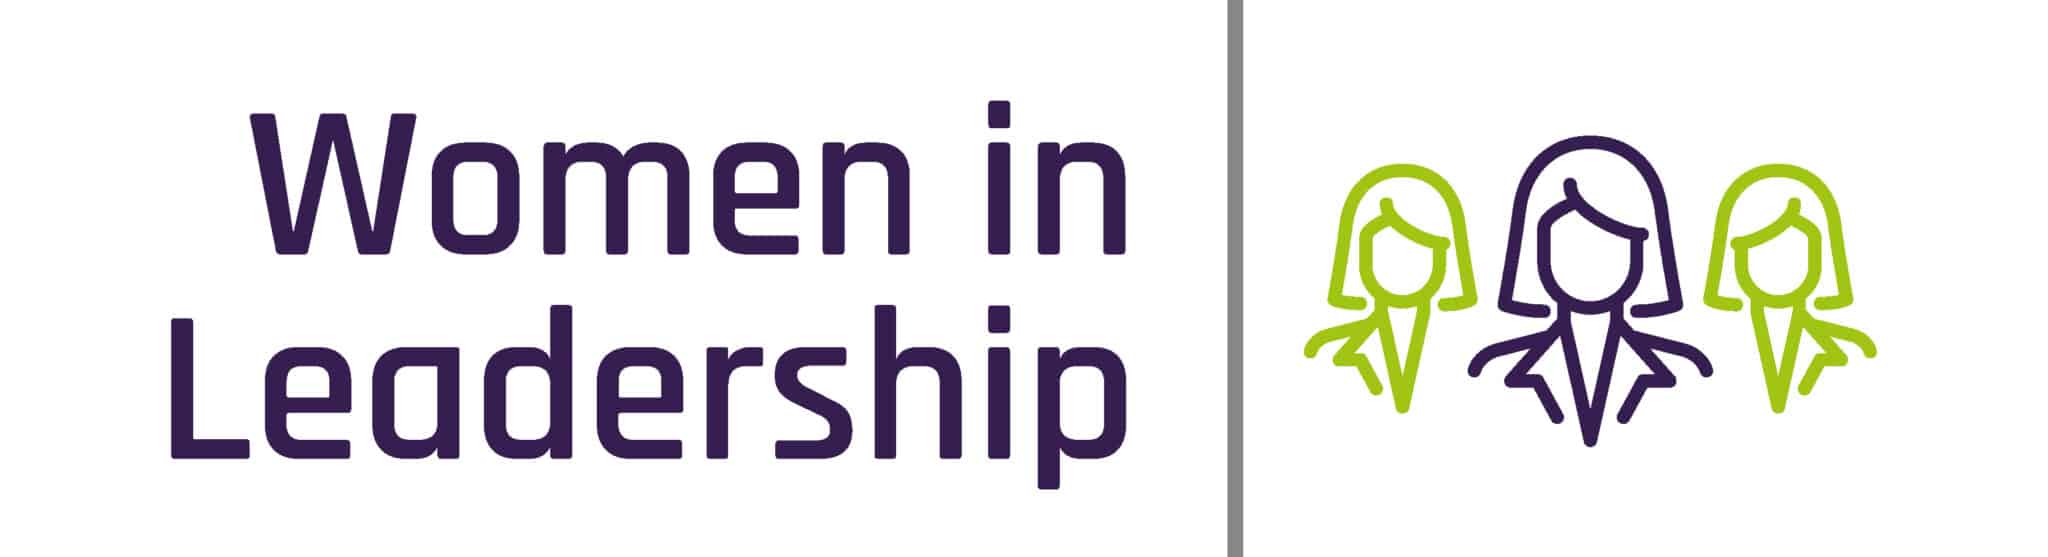 women in leadership logo